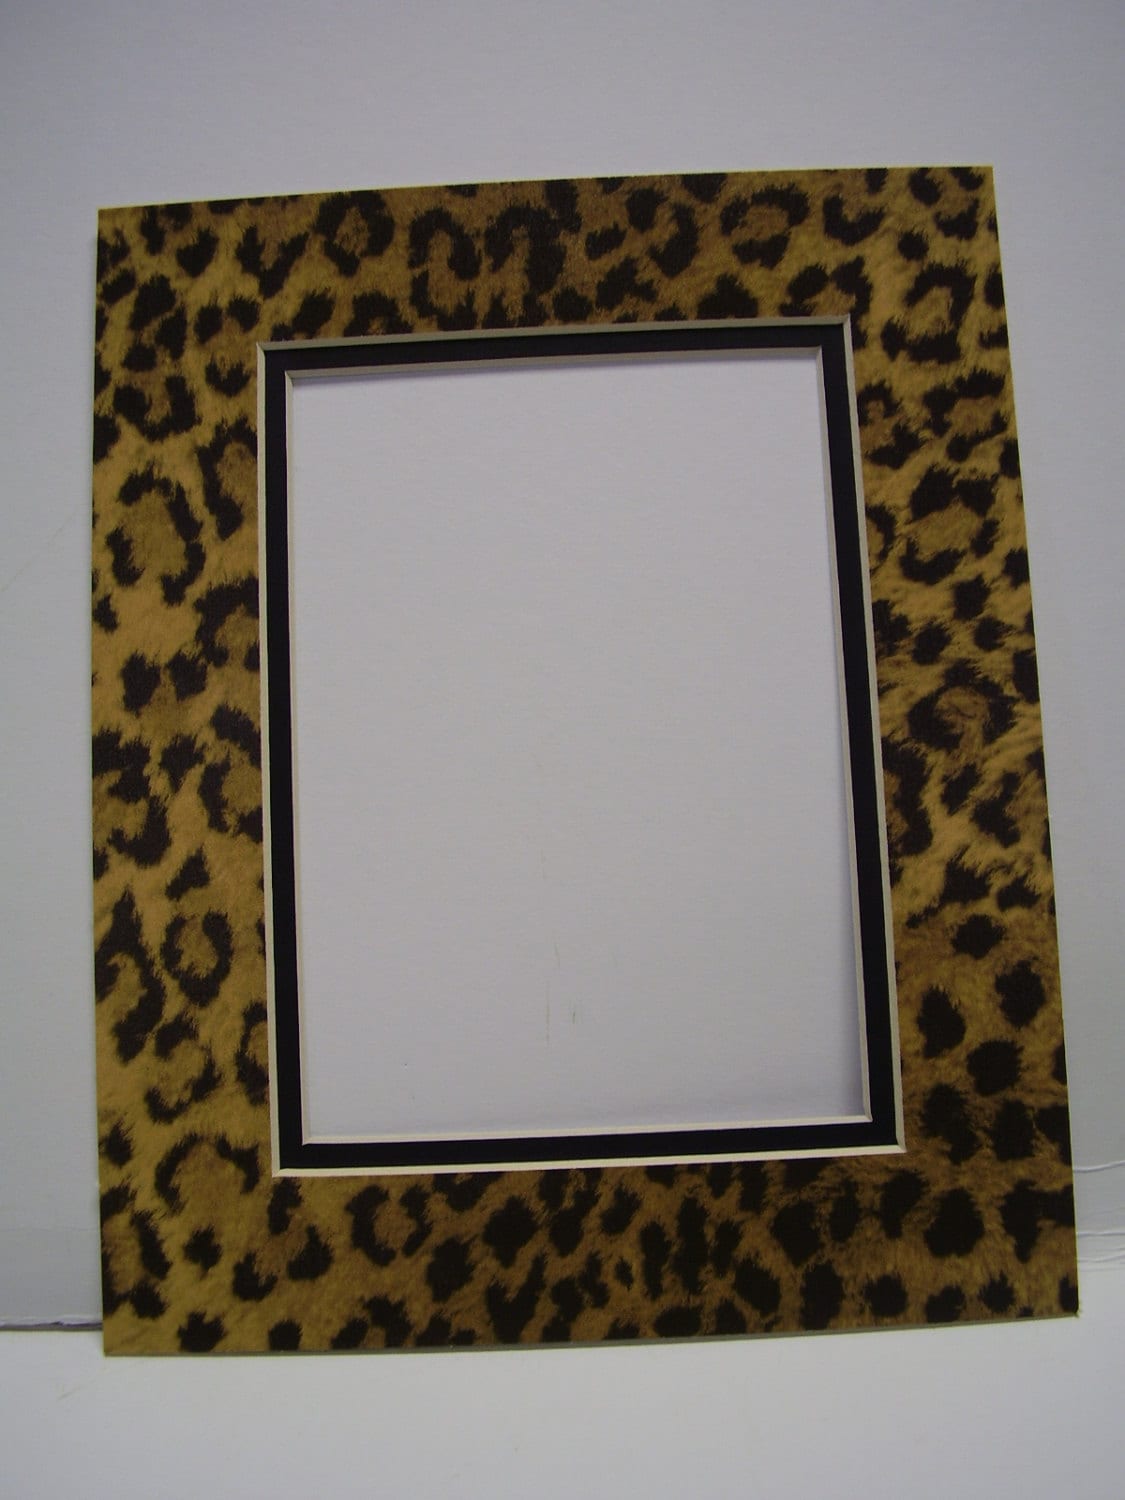 Jolie coeur sur fond leopard Photo frame effect